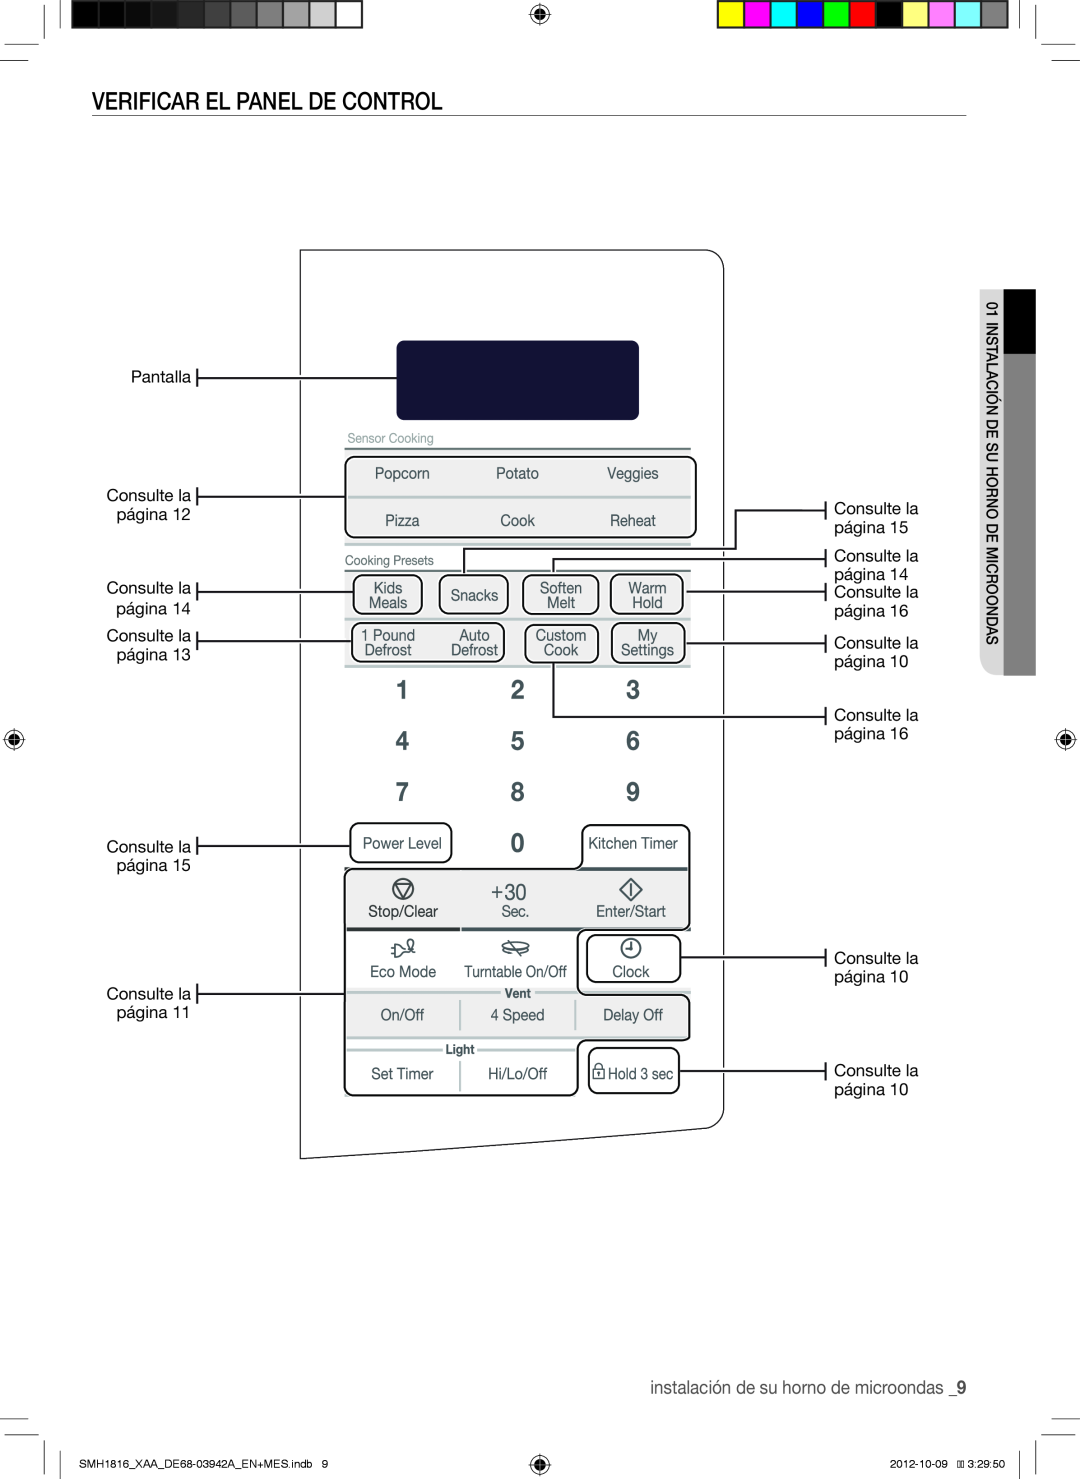 Samsung Verificar El Panel De Control, instalación de su horno de microondas, SMH1816XAADE68-03942AEN+MES.indb 